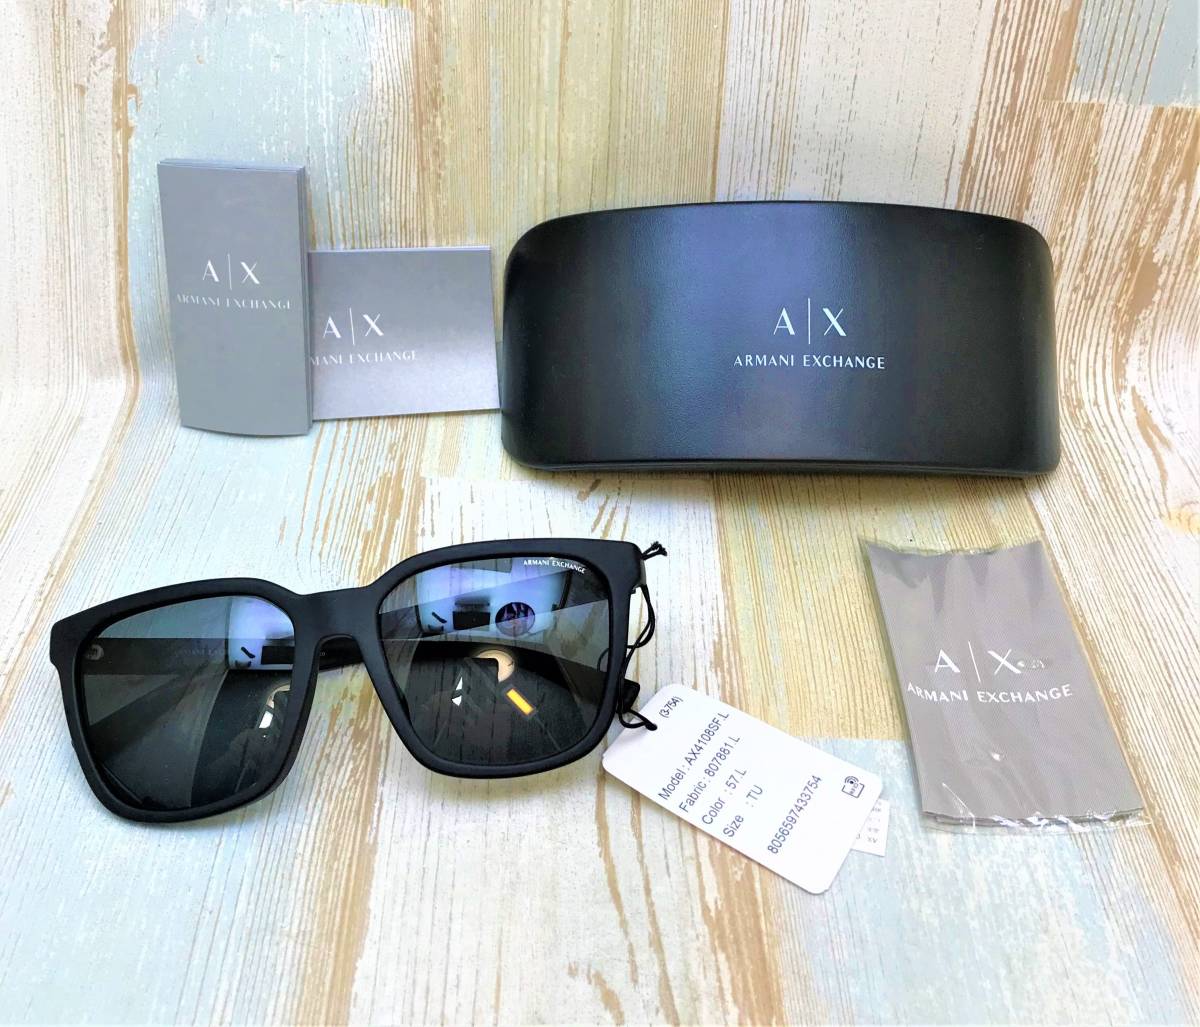  стандартный товар новый товар *ARMANI EXCHANGE Armani Exchange AX4108SF * солнцезащитные очки чёрный серия с логотипом * коробка линзы .. имеется 